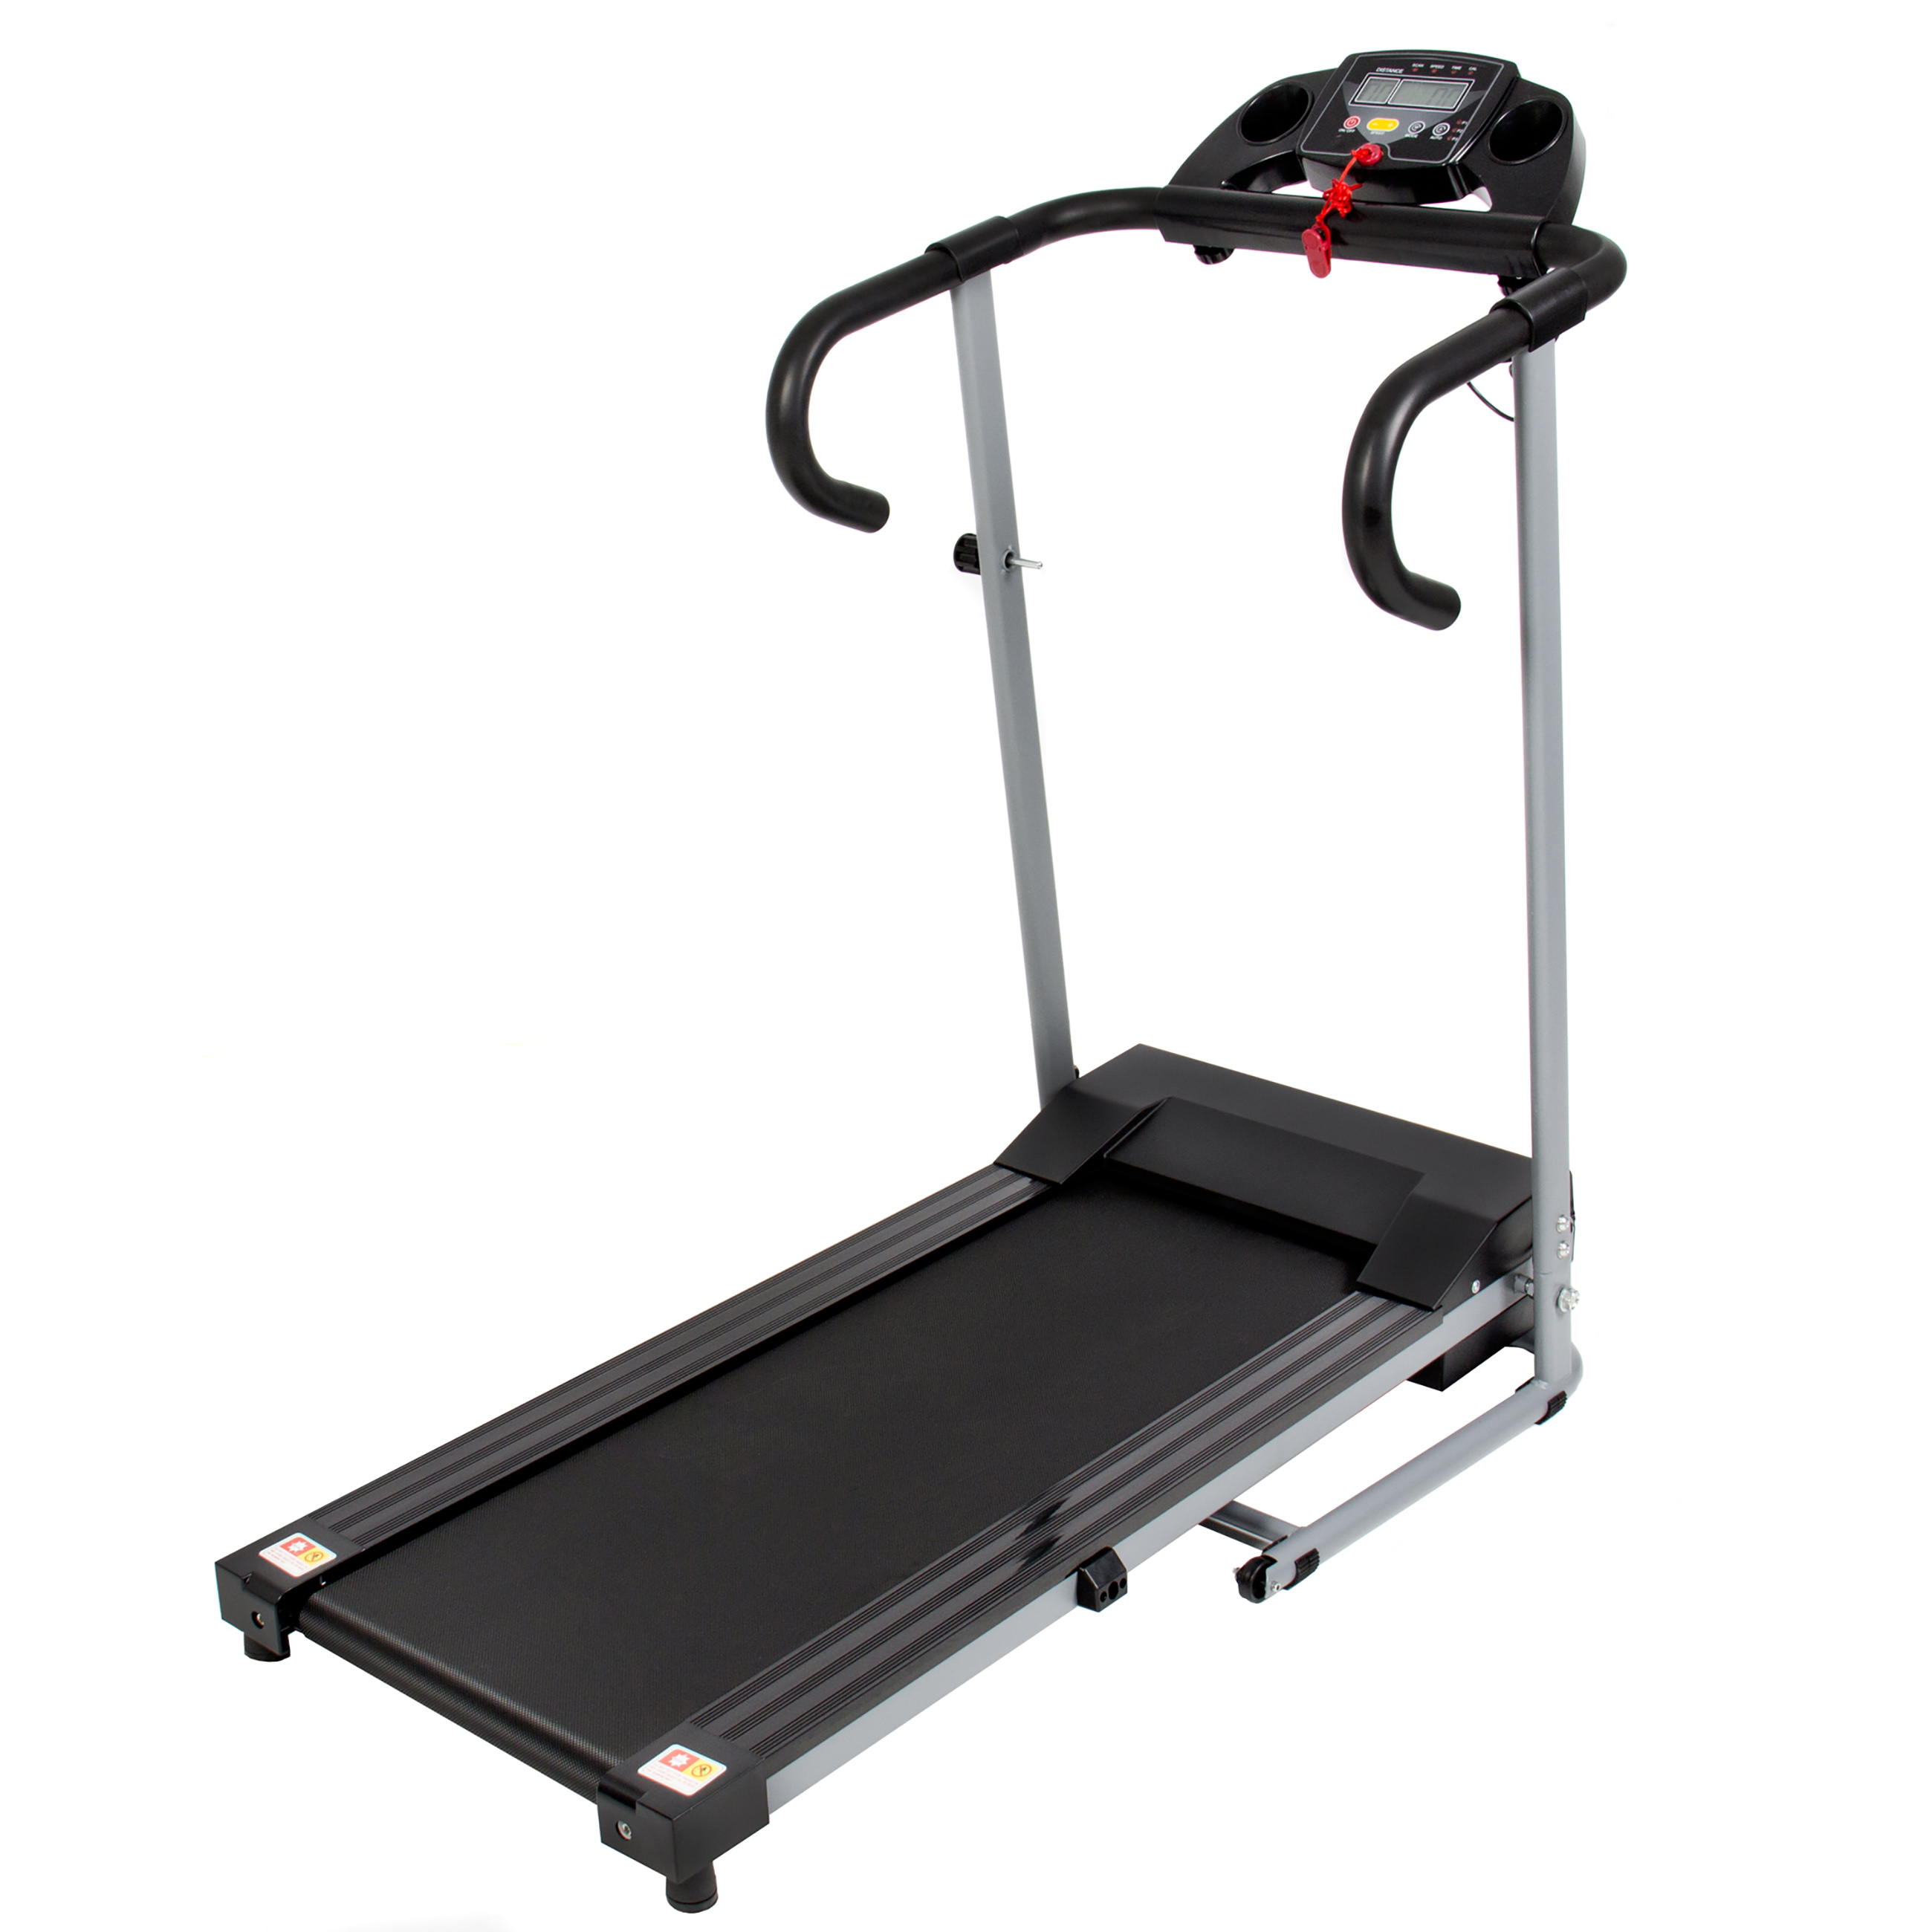 Sportcraft tx4.9 treadmill manual free